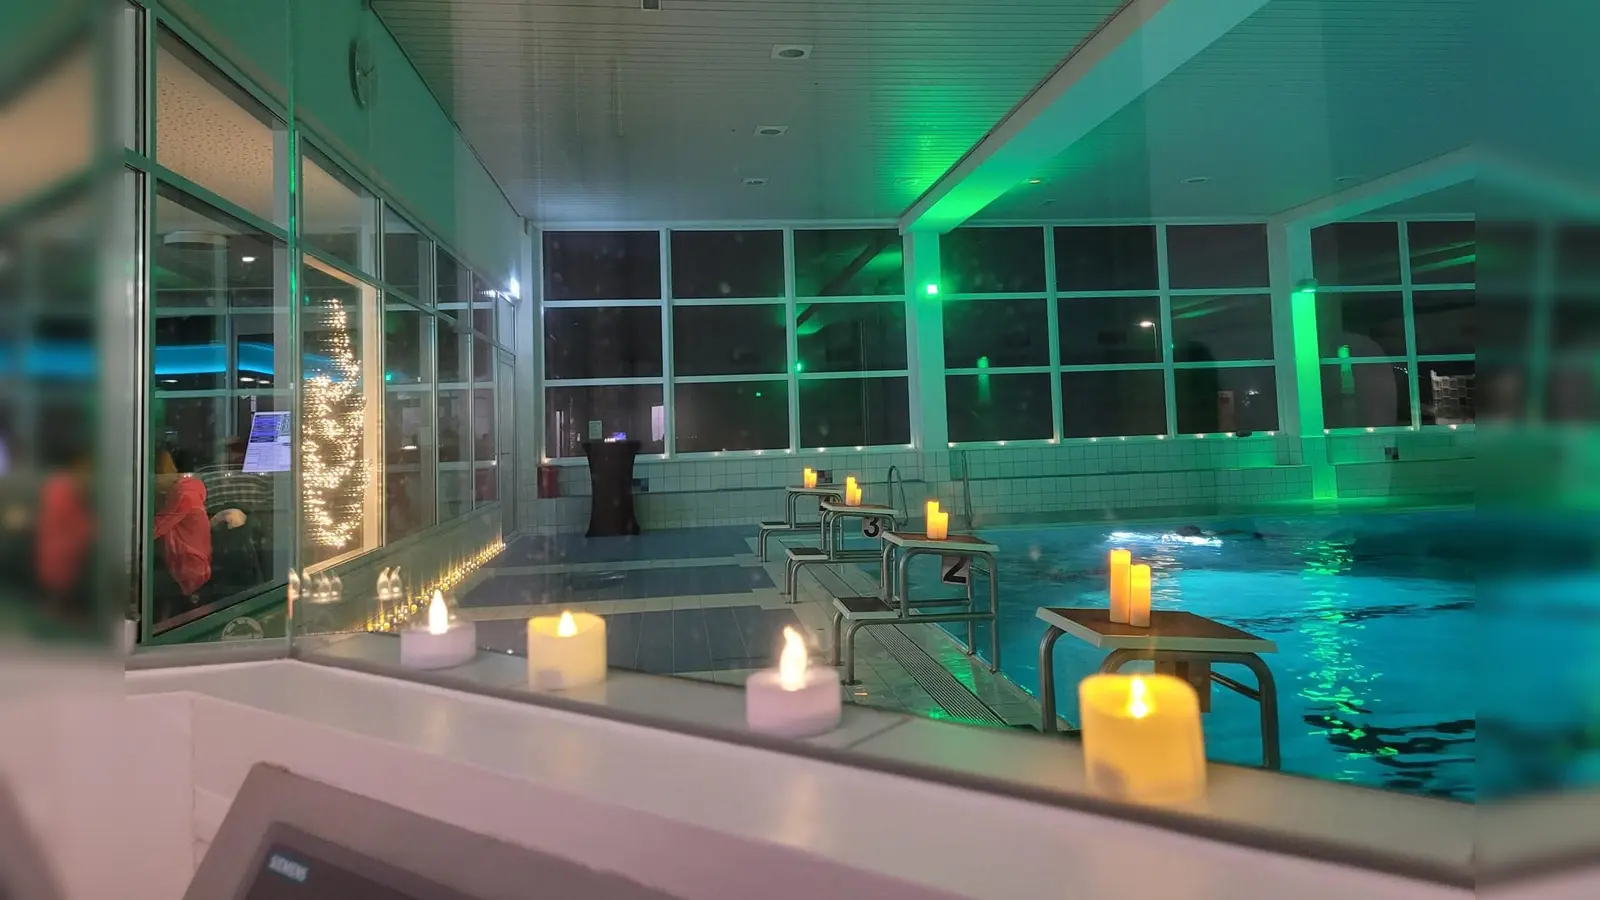 Das Hallenbad lädt zum Schwimmen in besonderer Illumination ein. (Foto: Maja Schulz)